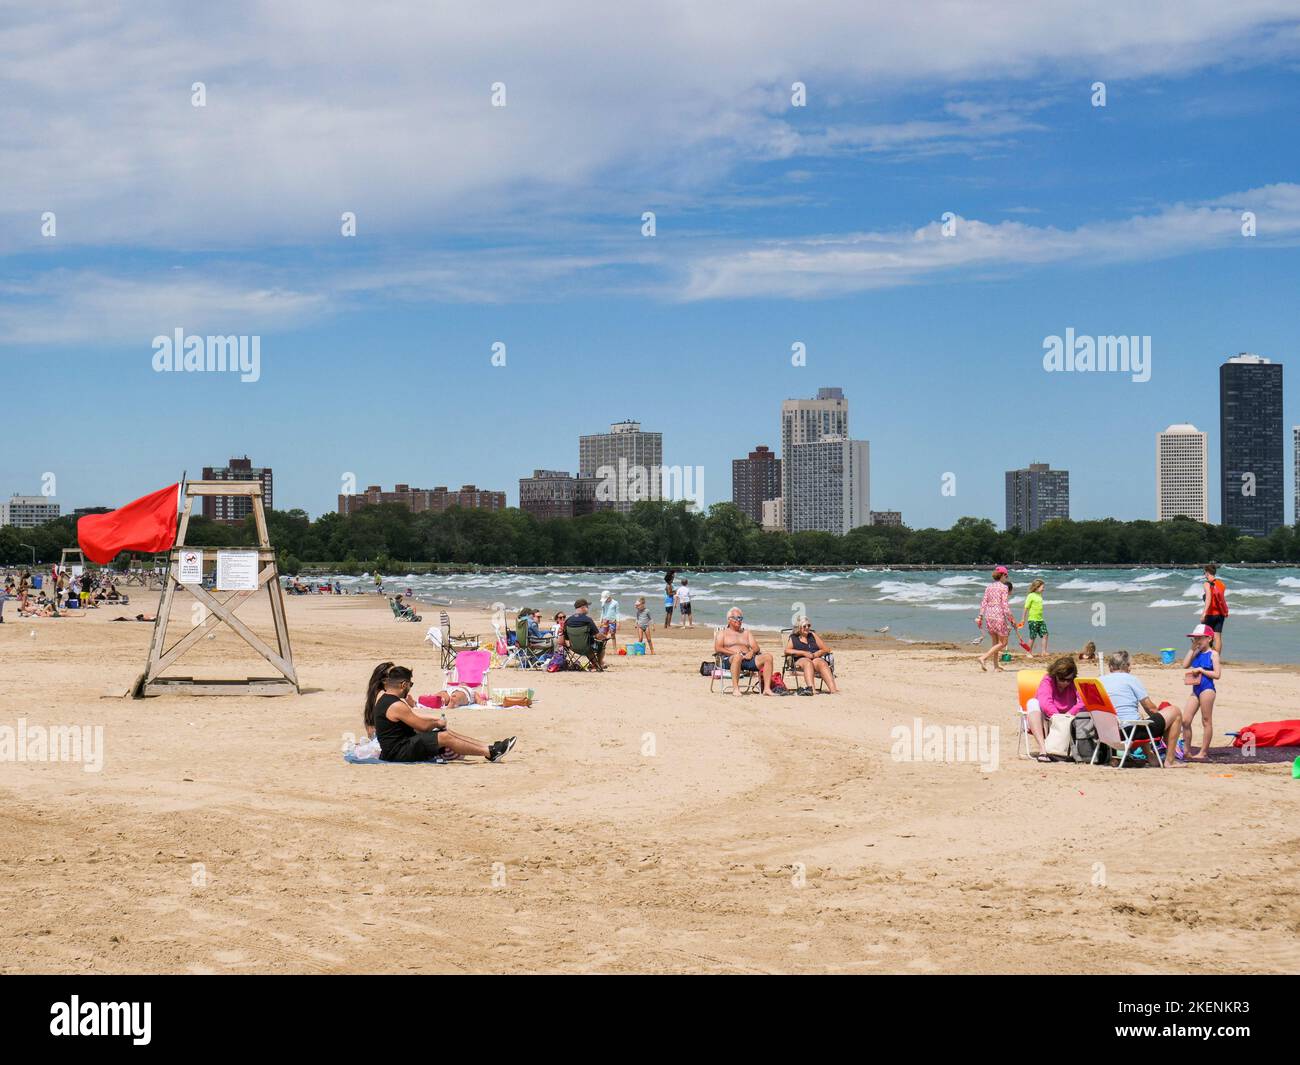 Strandgänger am Montrose Beach, Chicago, Illinois. Die rote Flagge weist darauf hin, dass aufgrund der rauhen Brandung kein Schwimmen erlaubt ist. Stockfoto